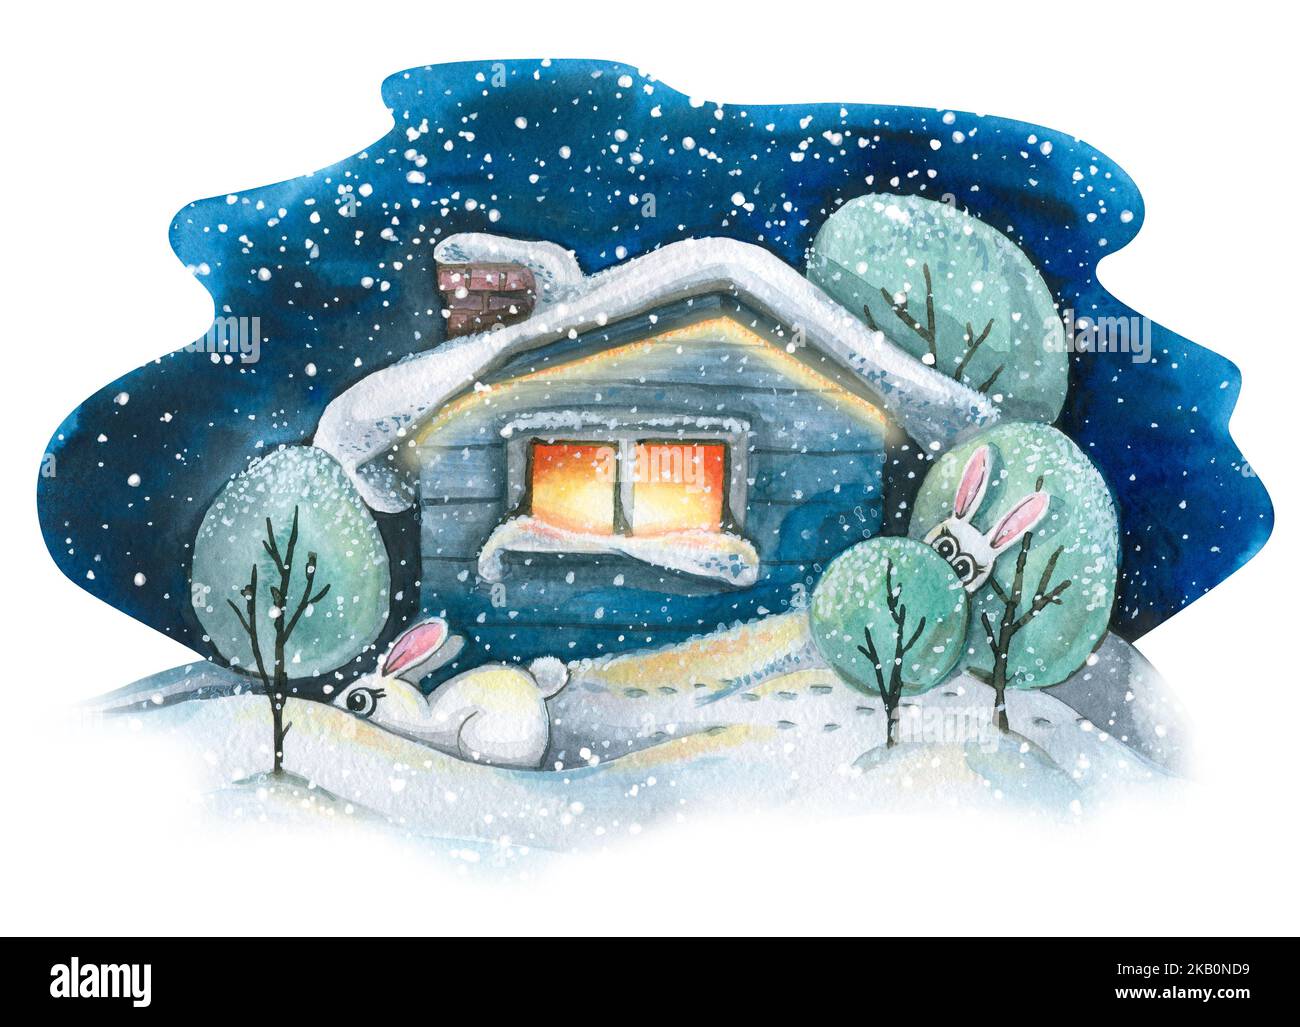 Une maison rustique dans la neige avec des arbres et des lapins mignons. Paysage d'hiver. Illustration aquarelle. Pour la conception et la décoration de cartes postales, affiches Banque D'Images